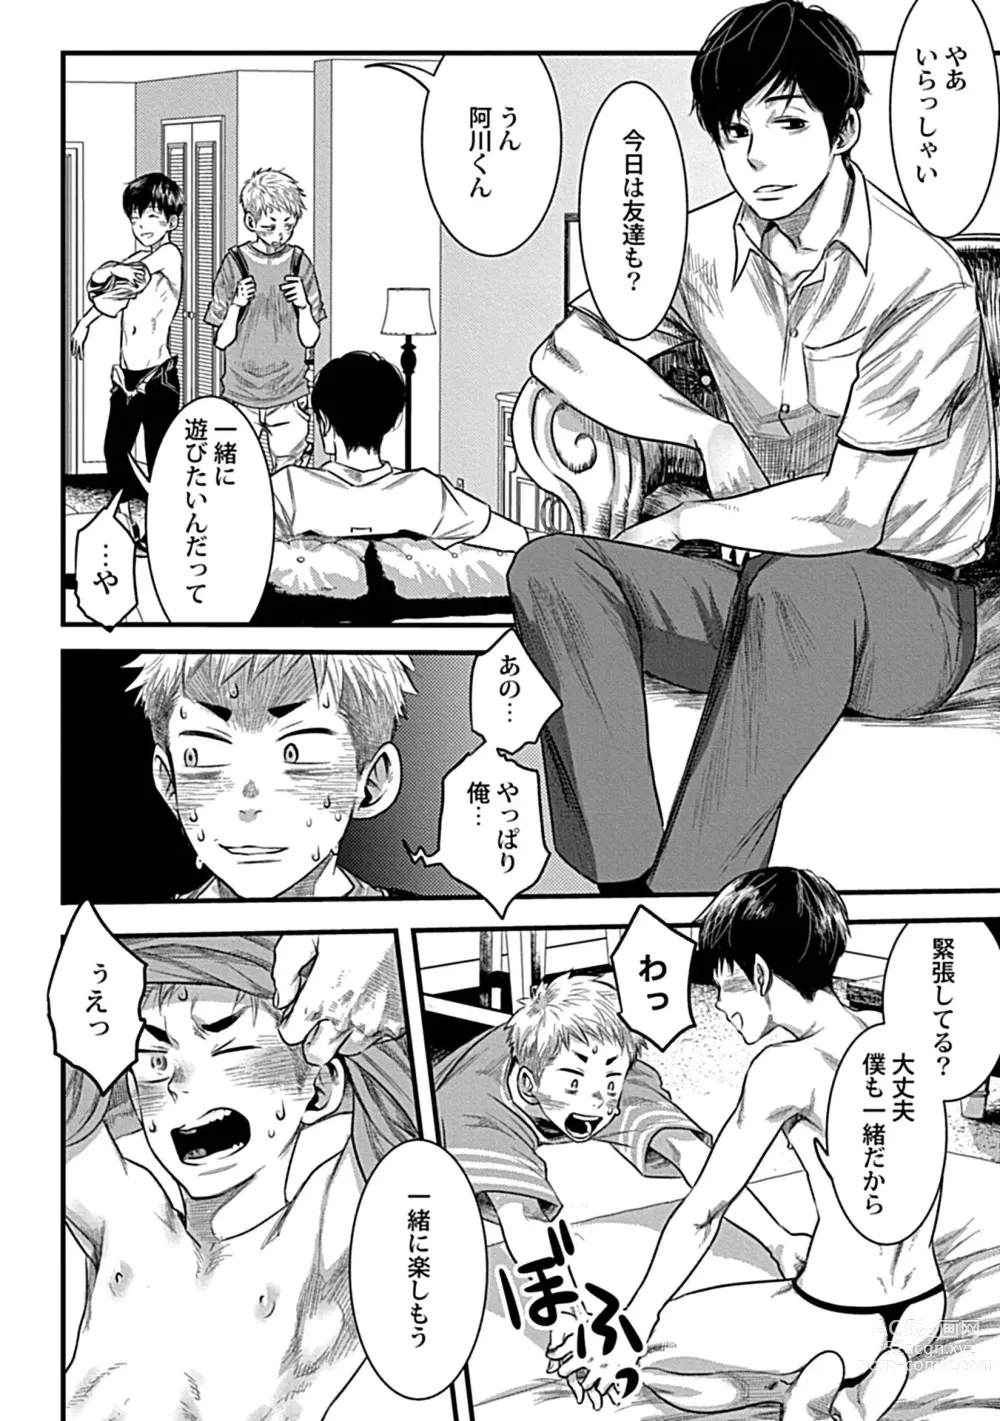 Page 14 of manga Zutto Kimi o Mite Ita